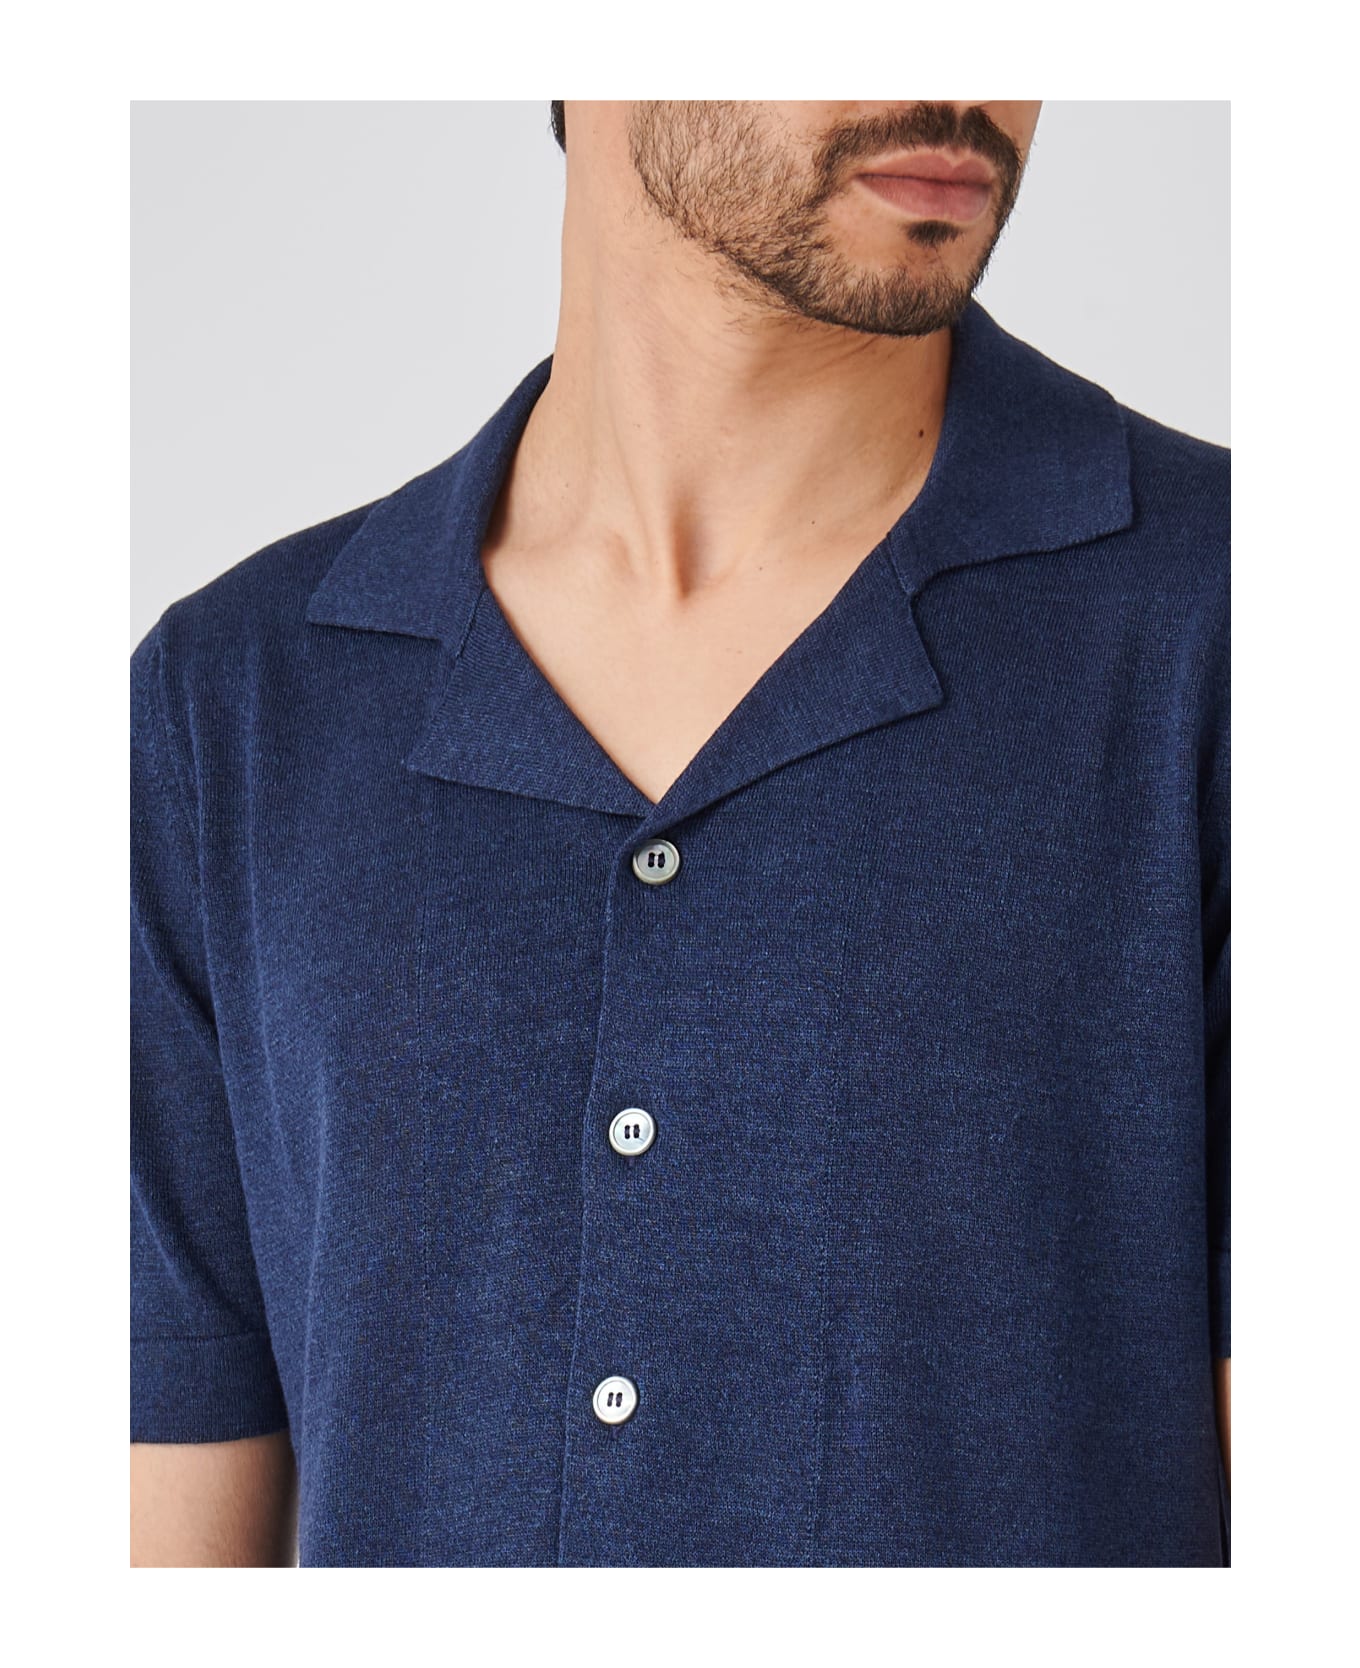 Gran Sasso Camicia M/m Shirt - AVIO シャツ